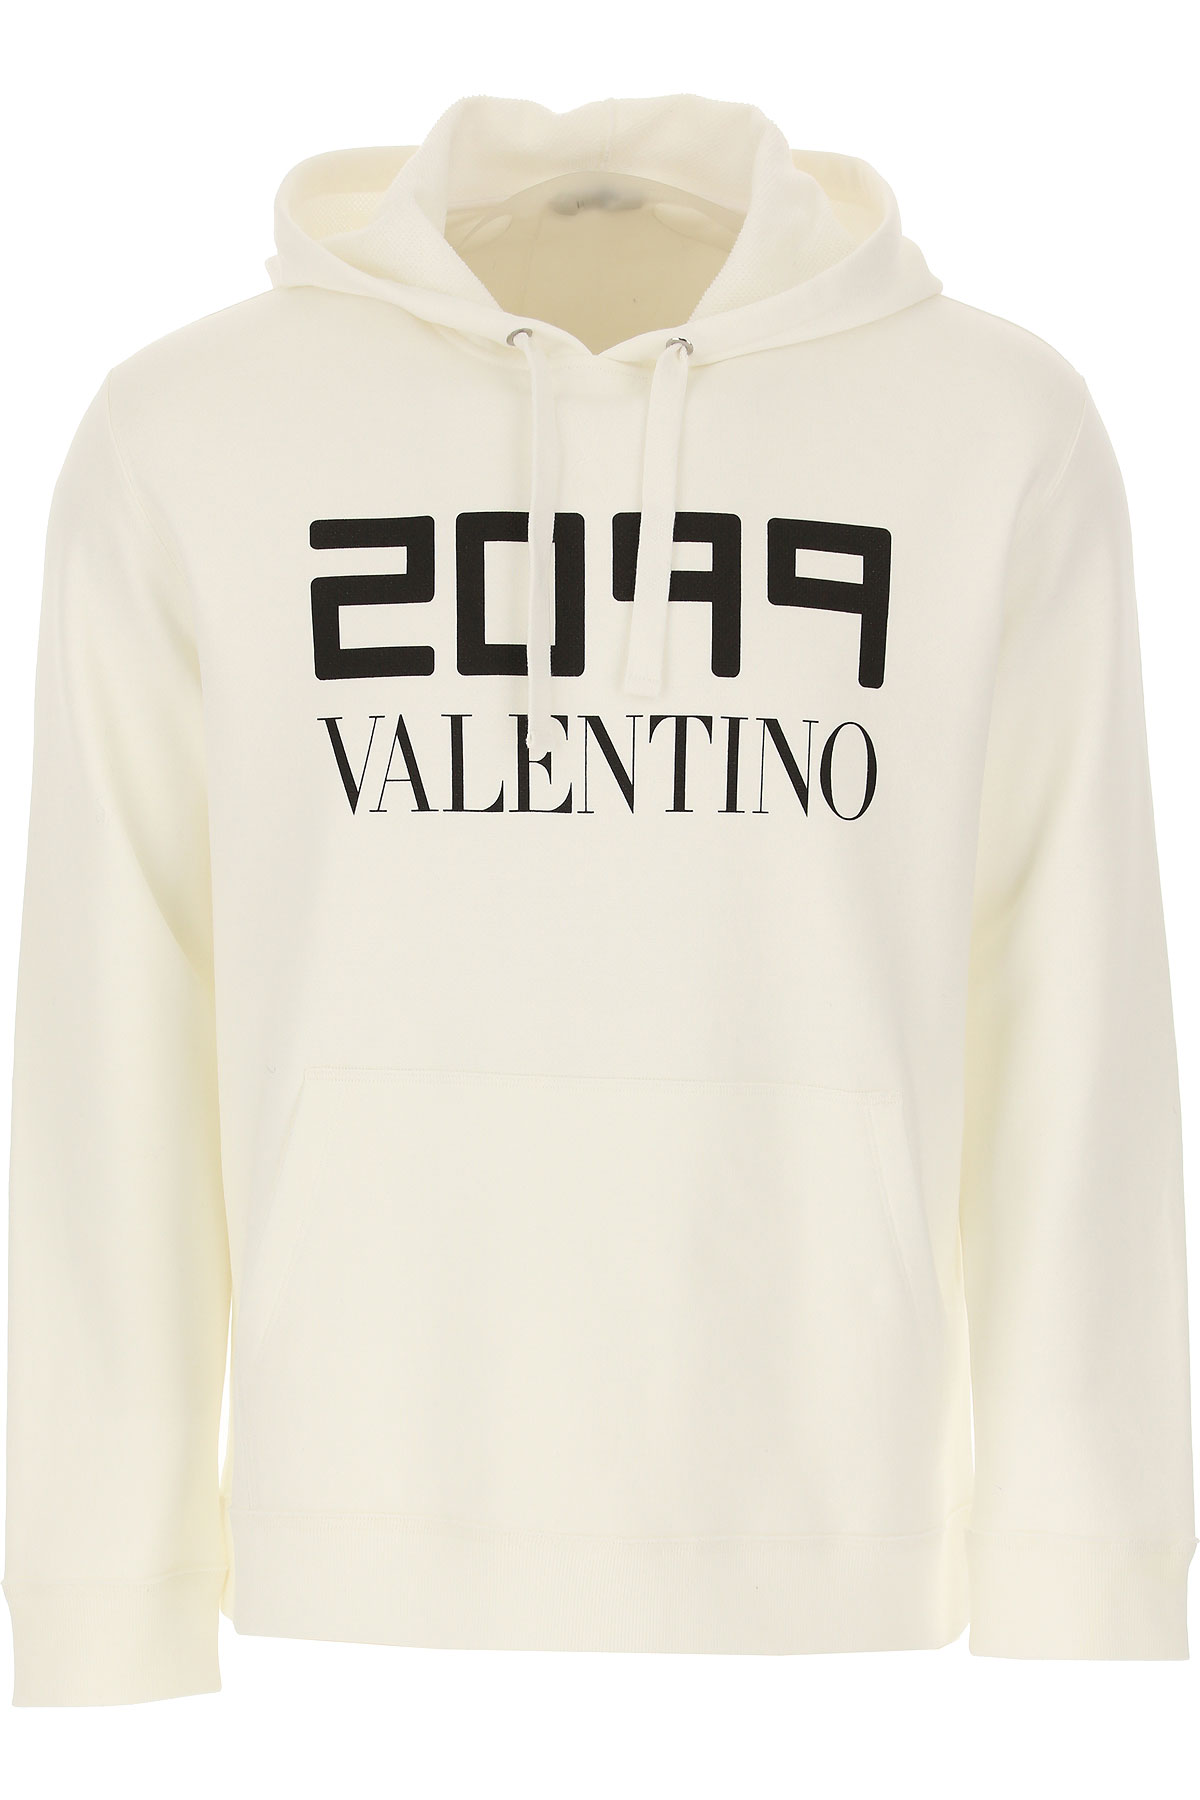 Valentino Sweatshirt für Herren, Kapuzenpulli, Hoodie, Sweats Günstig im Sale, Weiss, Baumwolle, 2017, L M